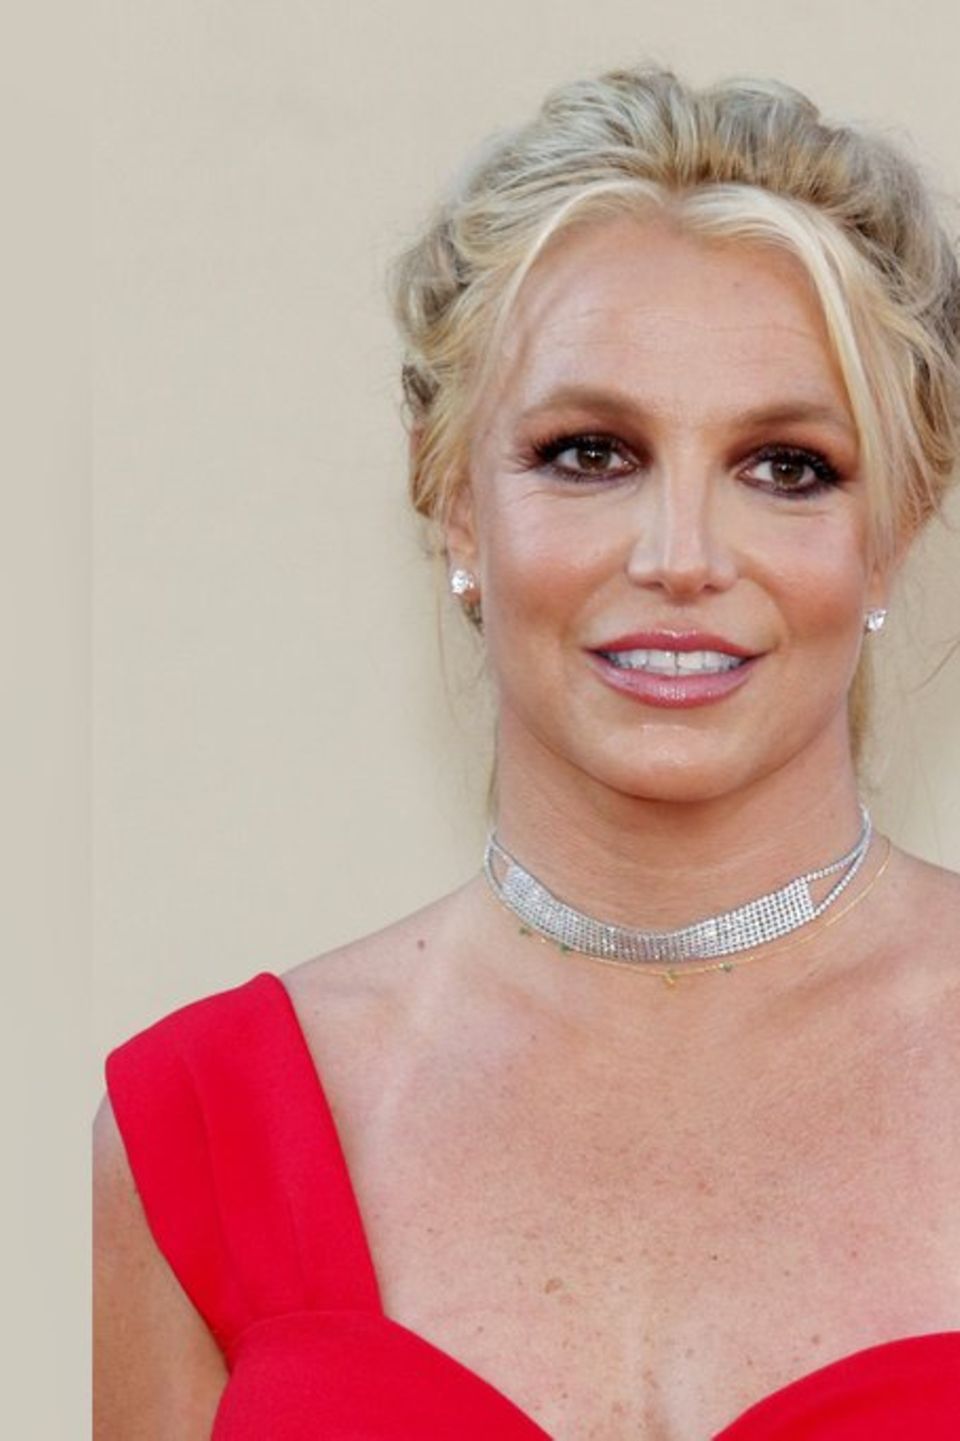 Sängerin Britney Spears hat zwei Söhne mit ihrem Ex-Mann Kevin Federline, Sean Preston und Jayden. Angeblich hat sie die beide